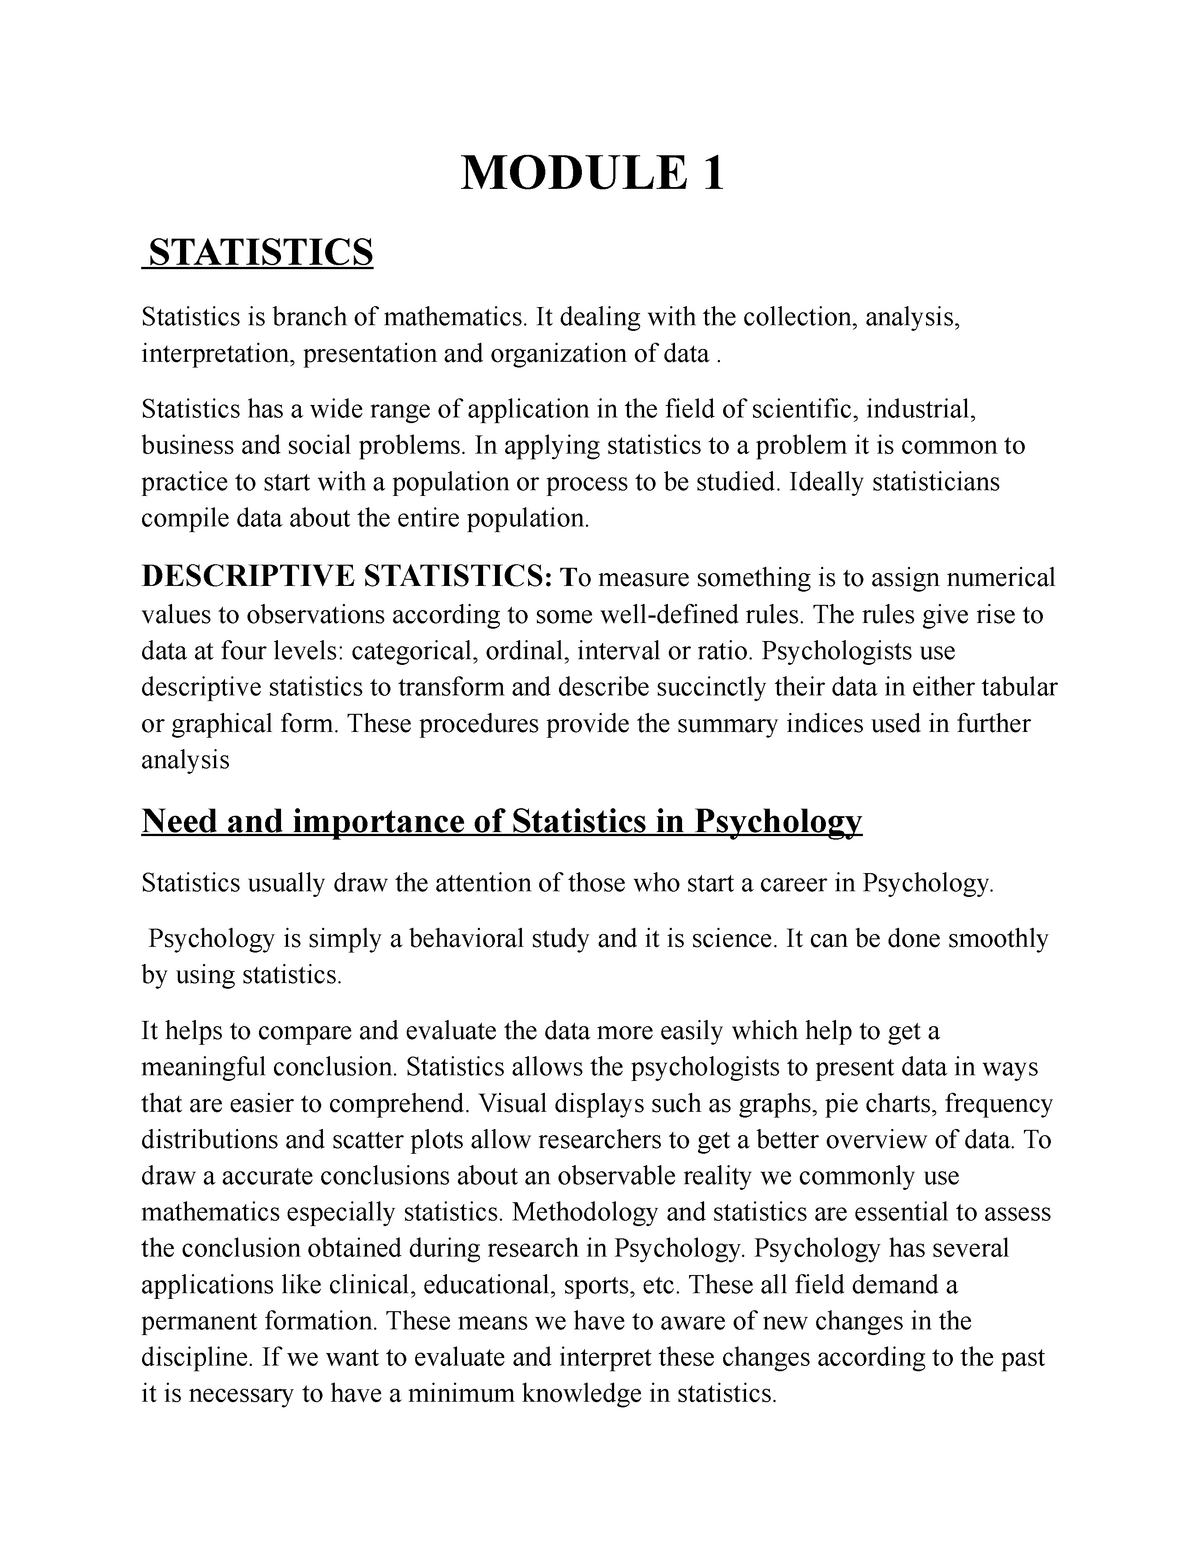 essay topics for statistics